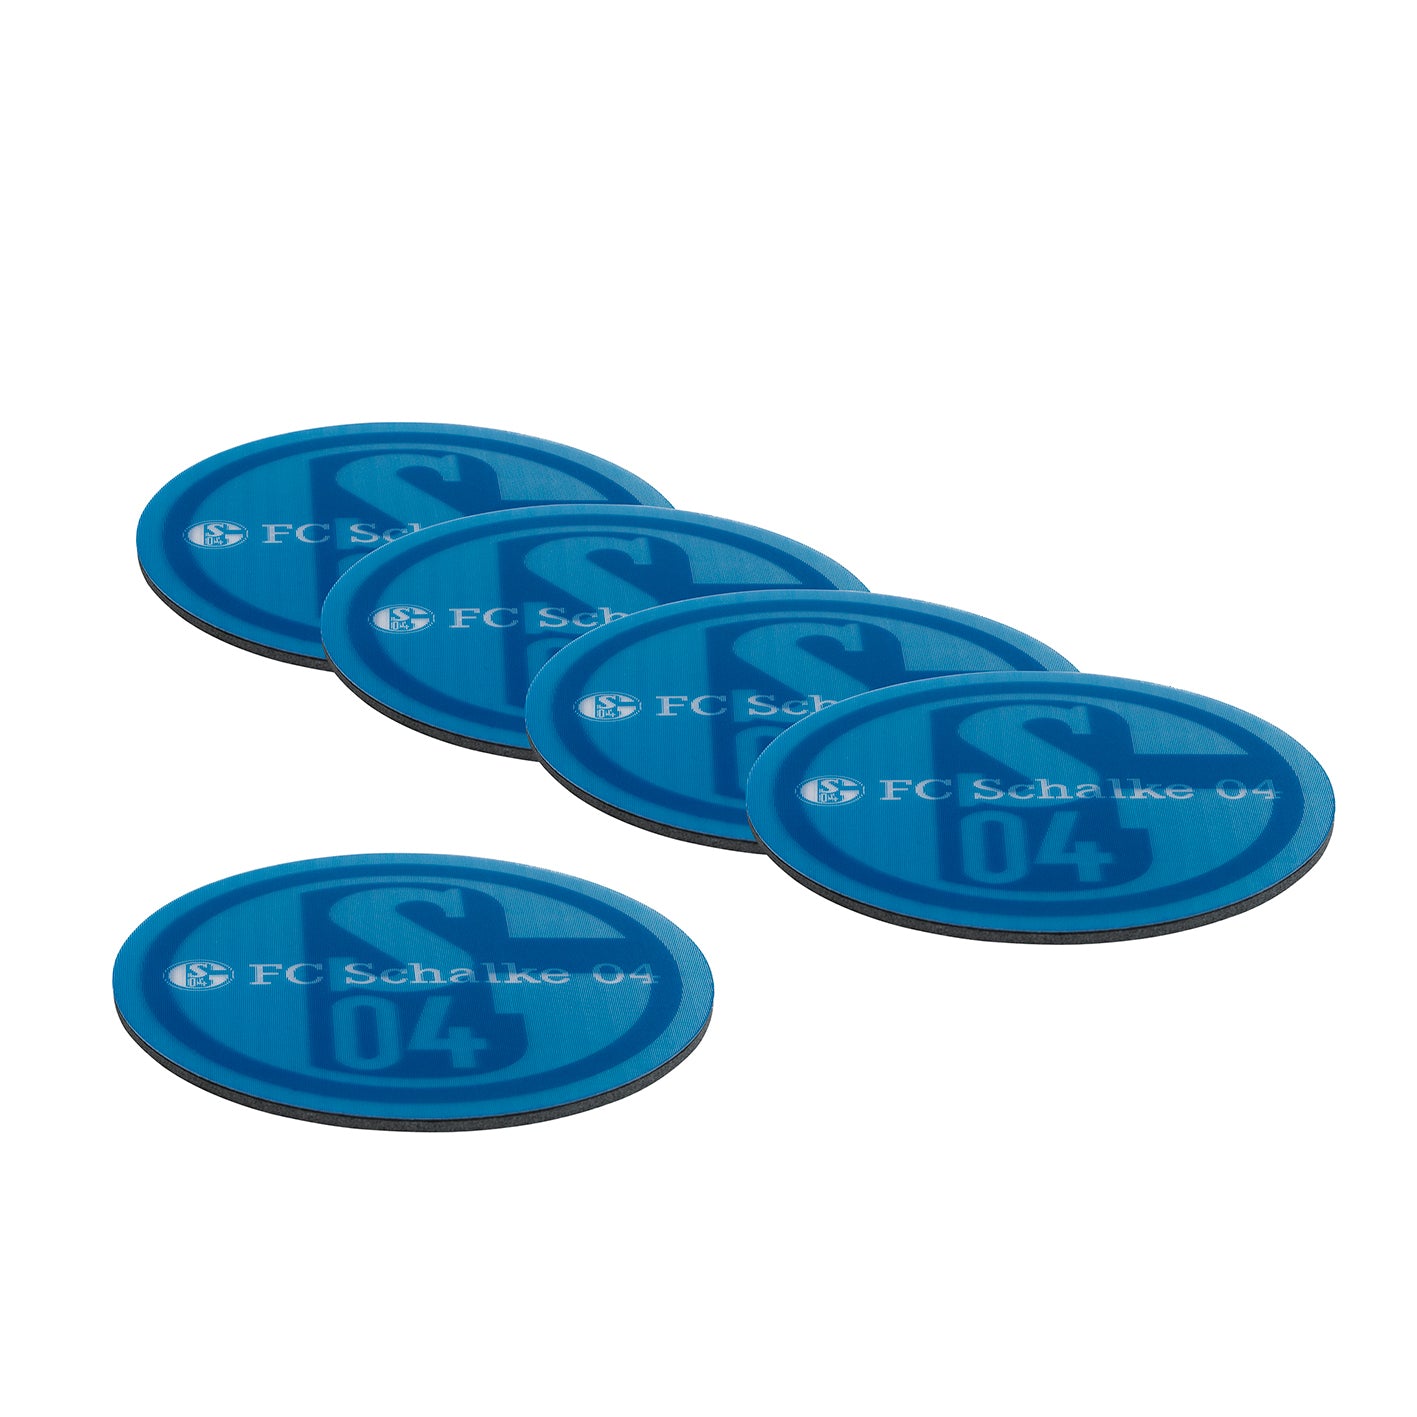 Untersetzer 3D - 10,5 x 10,5 cm - 5er-Set - weiß/blau mit Logo